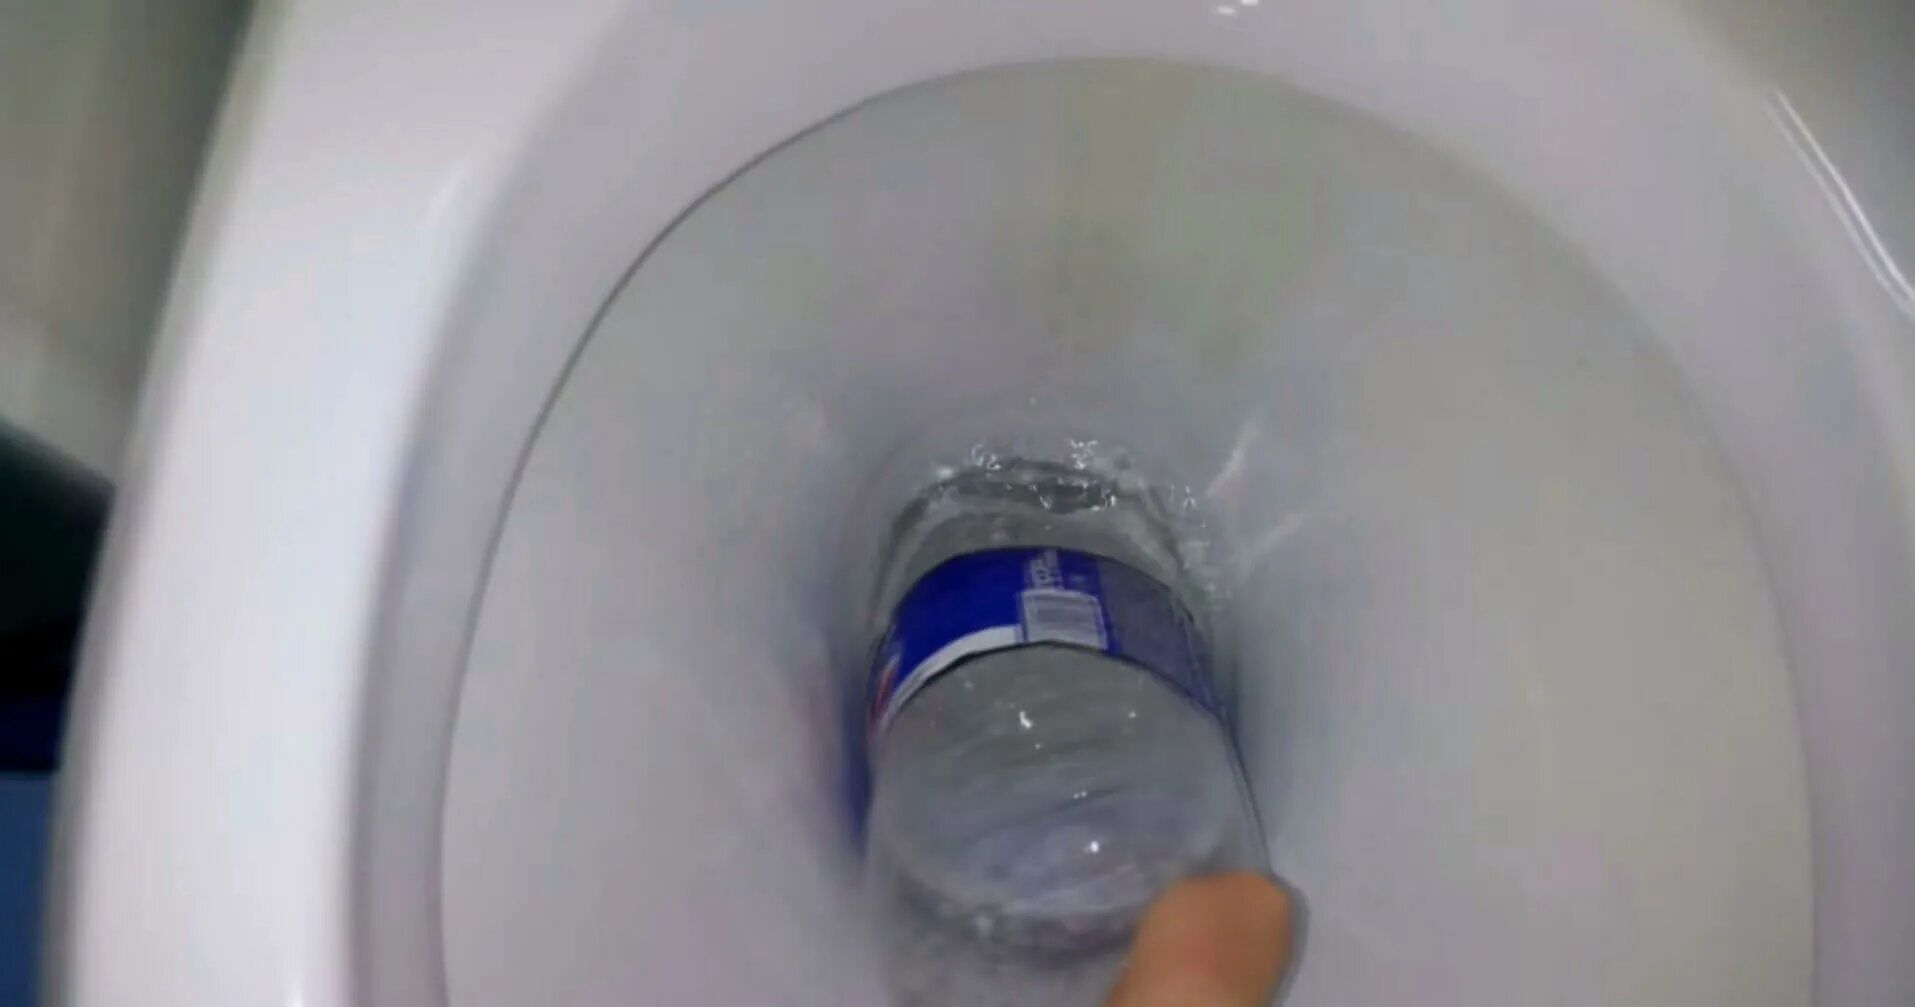 Вантуз из пластиковой бутылки для унитаза. Как убрать засор в унитазе в домашних